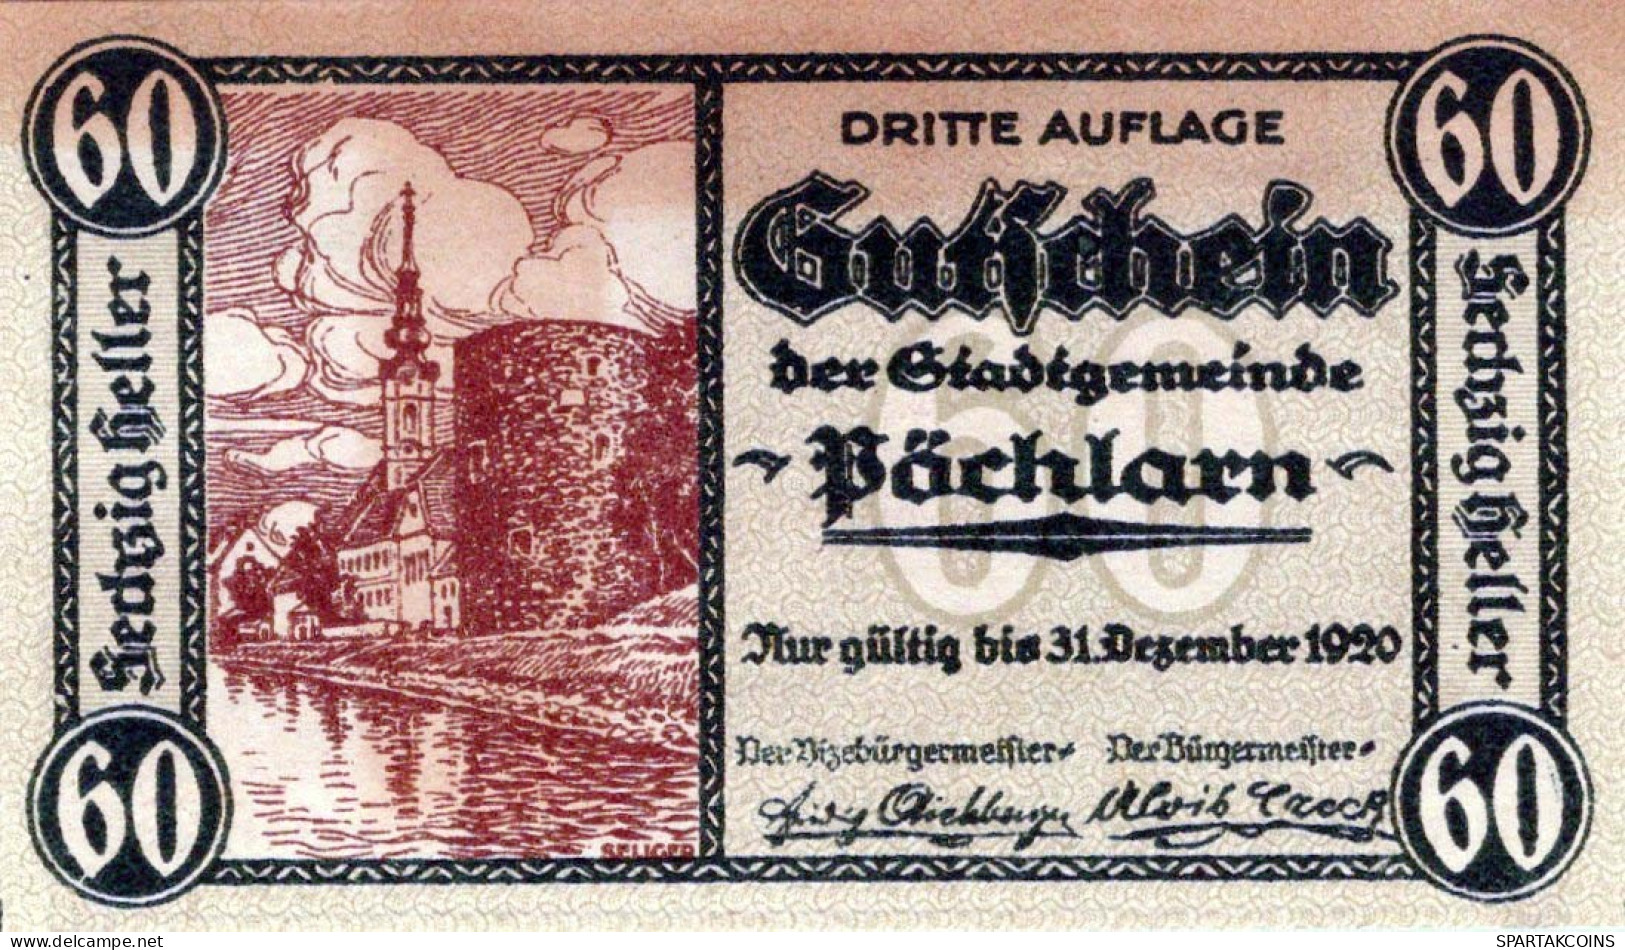 60 HELLER 1920 Stadt PoCHLARN Niedrigeren Österreich Notgeld Banknote #PE304 - Lokale Ausgaben